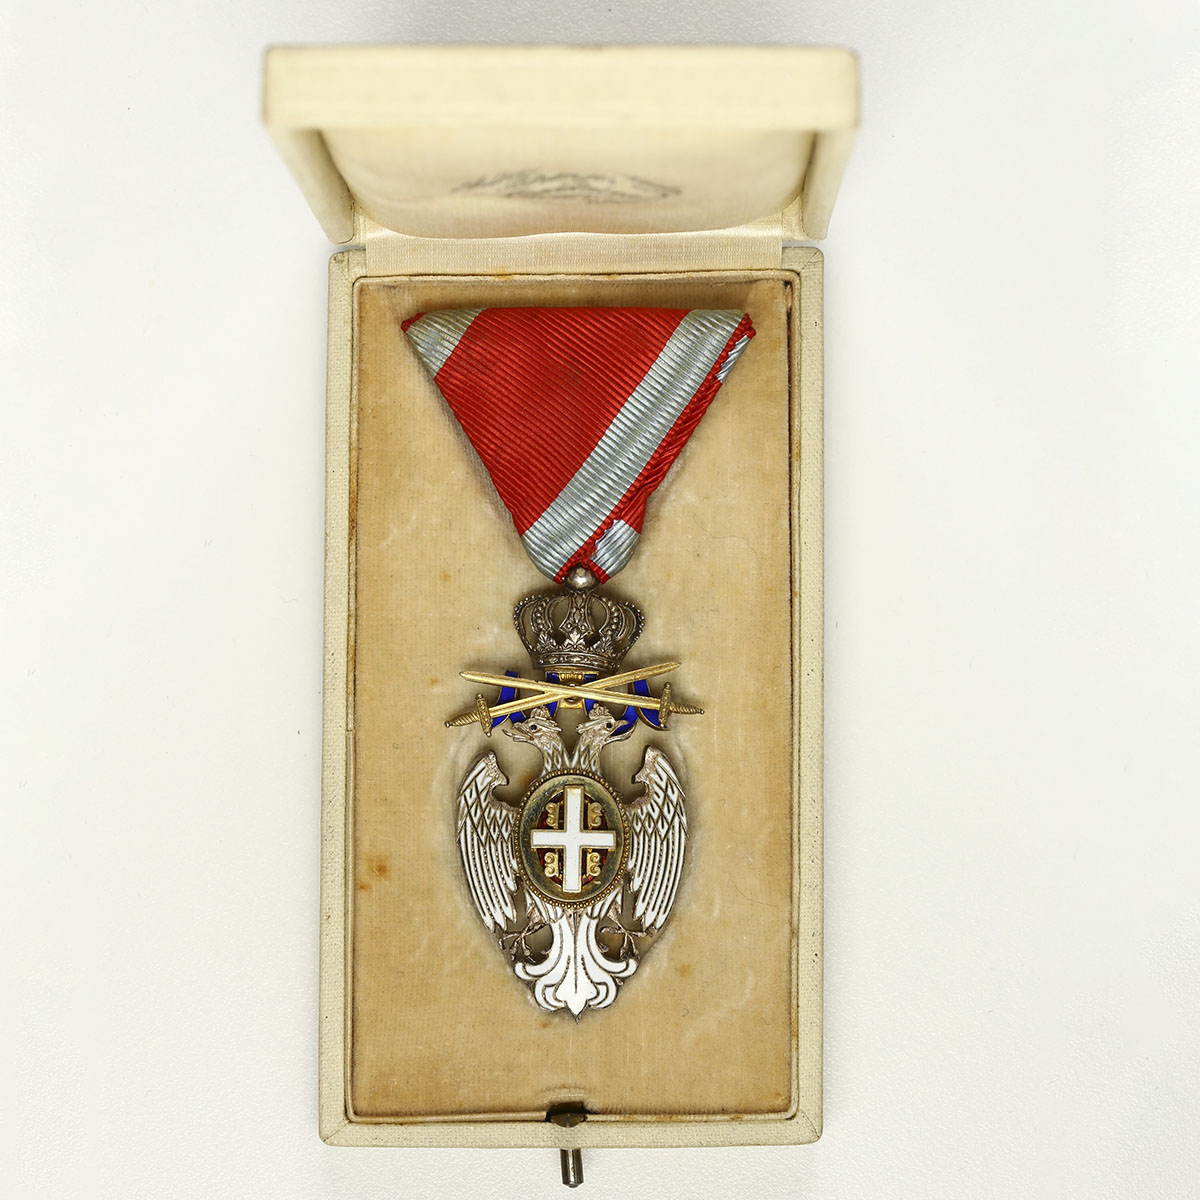 貨幣博物館 Srbija セルビア 白鷲勲章 オリジナル箱付き 美品 極美品